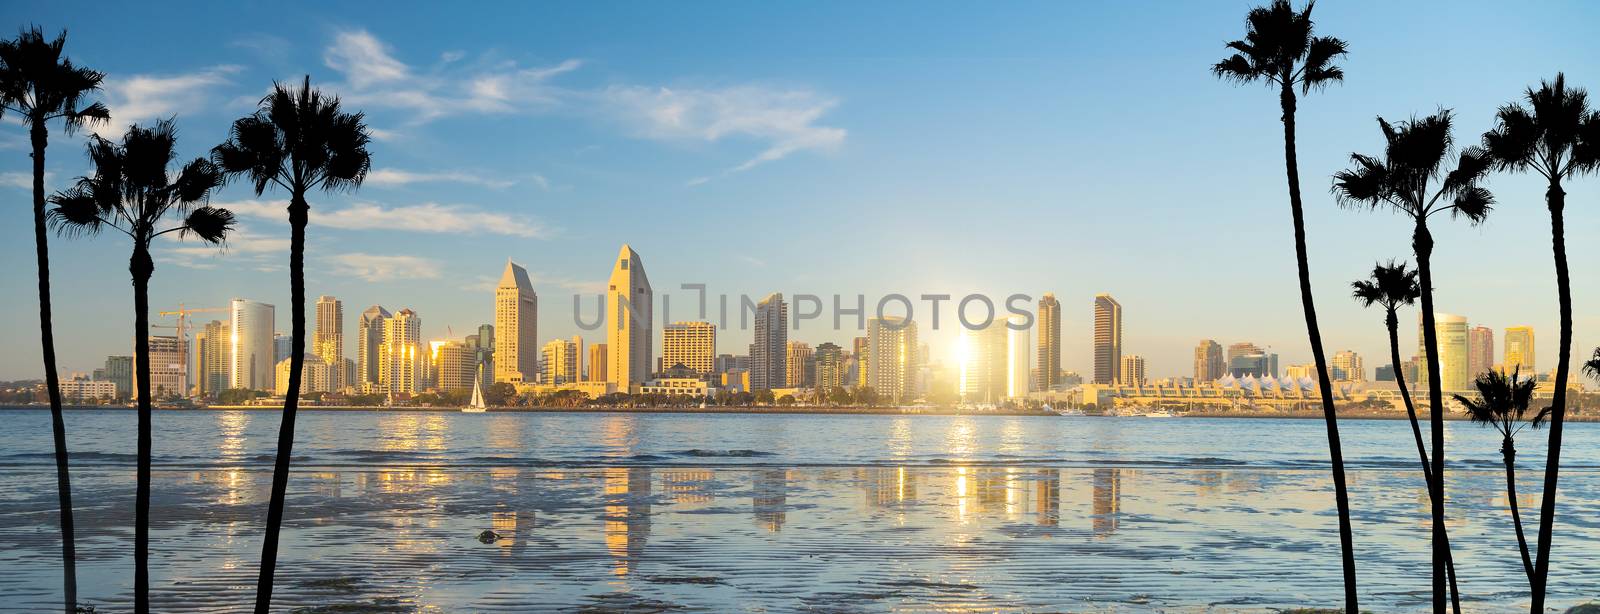 Downtown San Diego skyline in California, USA by f11photo